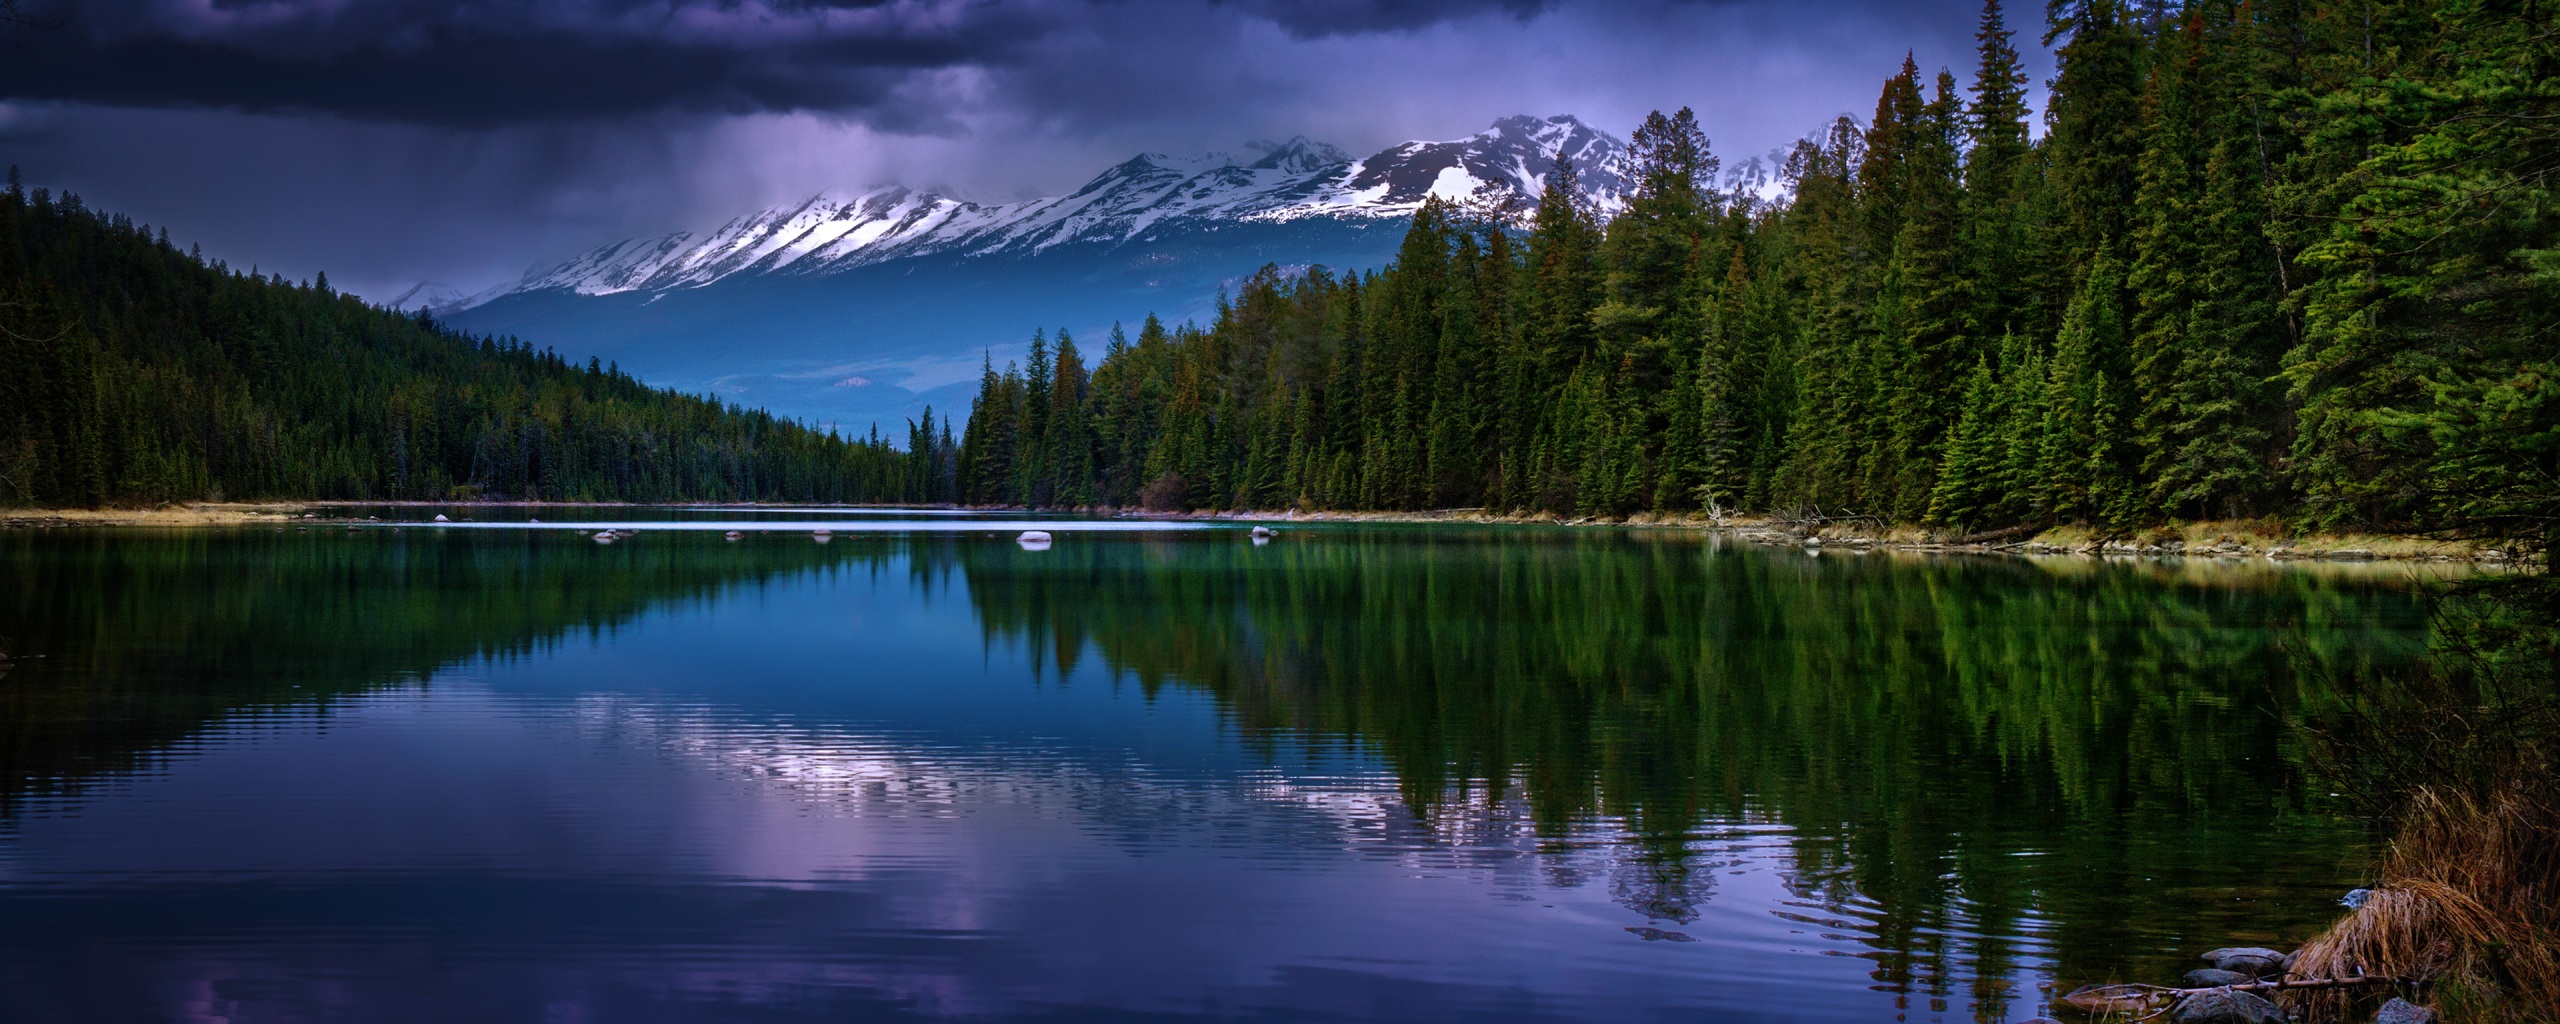 Hãy khám phá vẻ đẹp tuyệt đỉnh của hồ Alberta qua từng hình ảnh trong bộ sưu tập của chúng tôi. Những hình ảnh về mặt nước trong xanh cùng với khung cảnh xung quanh sẽ chắc chắn khiến bạn phải đứng ngồi không yên.